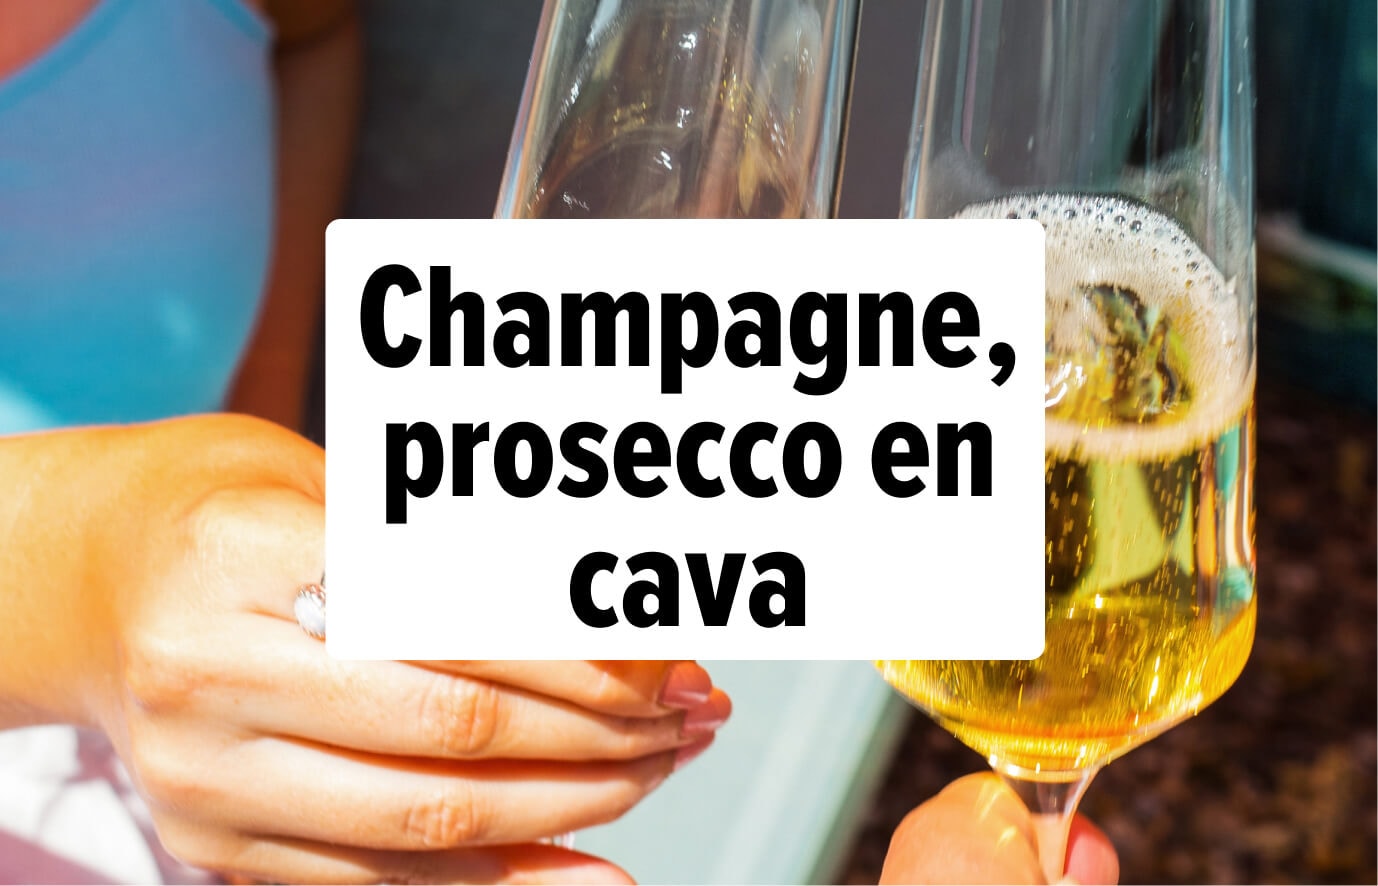 ontdek/wijn/zomerwijnen/thuis-champagne-nr1